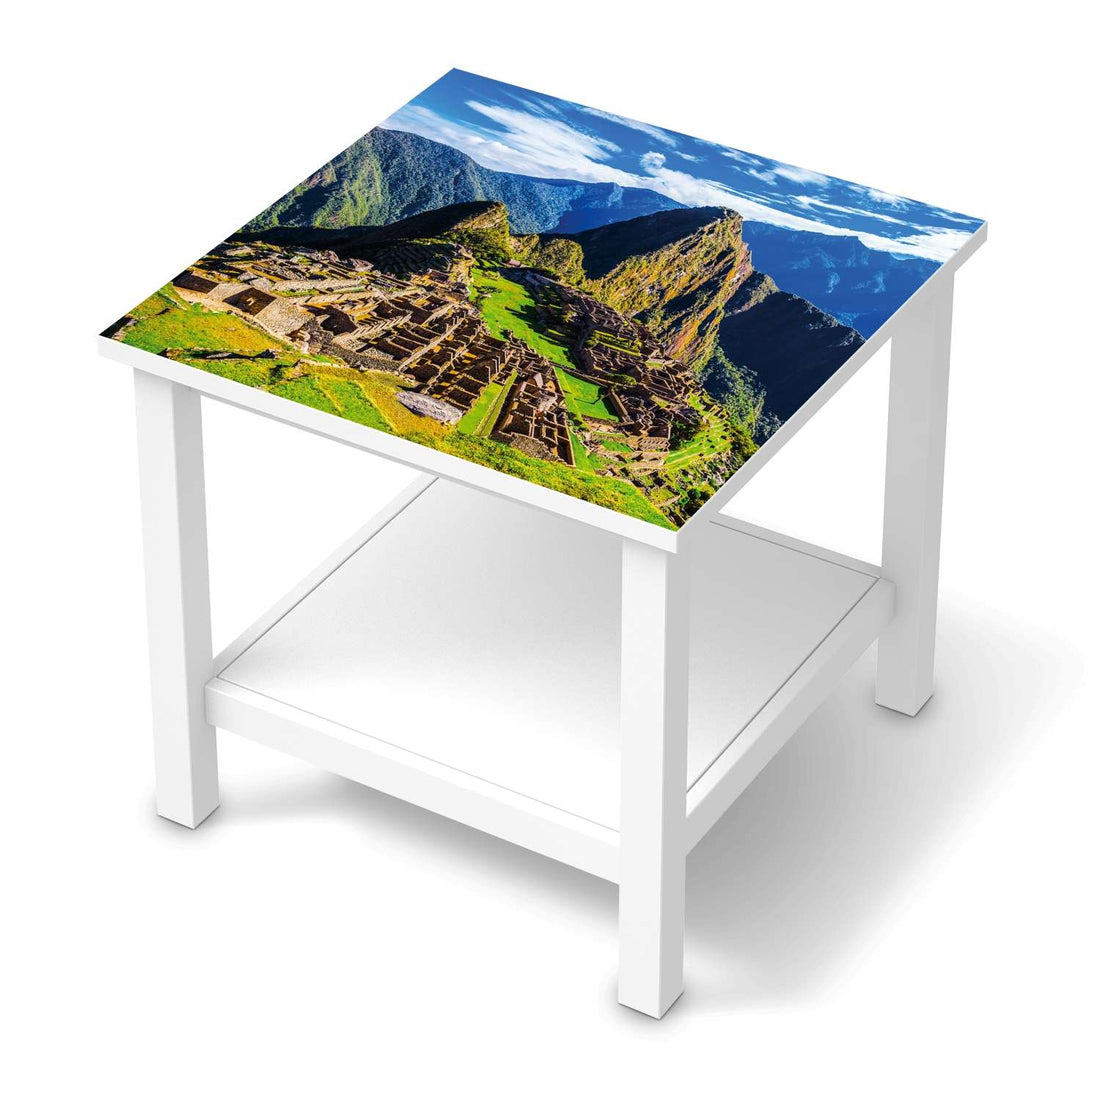 Möbel Klebefolie Machu Picchu - IKEA Hemnes Beistelltisch 55x55 cm  - weiss